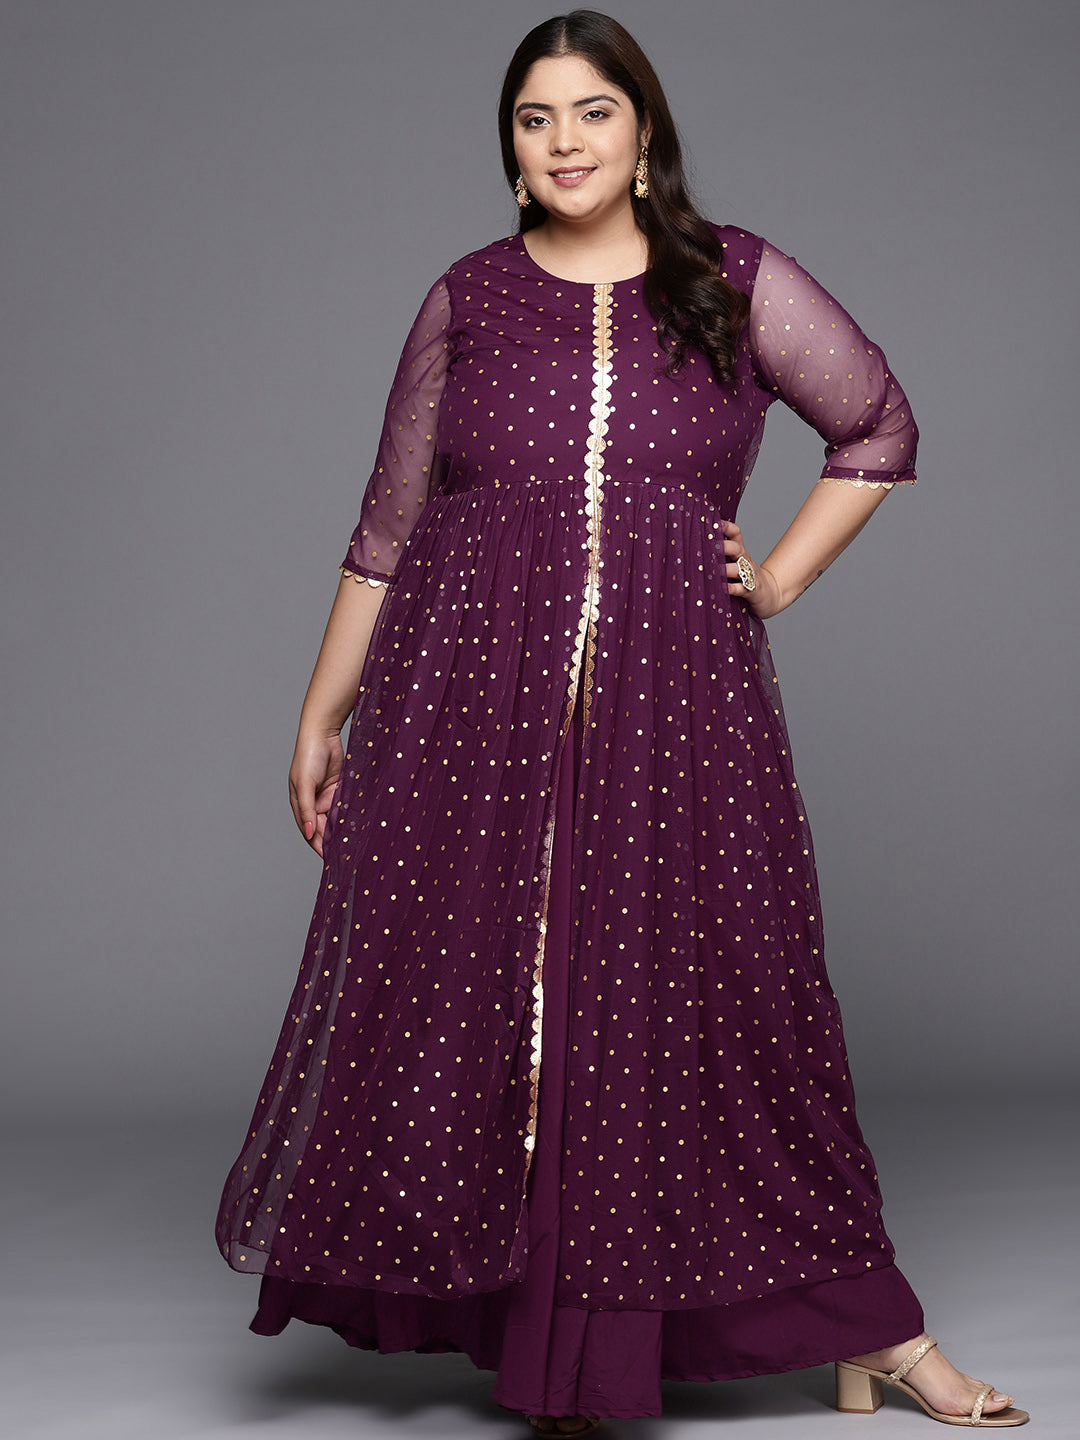 Plus Size Indian Dresses - Buy Plus Size Indian Dresses Online